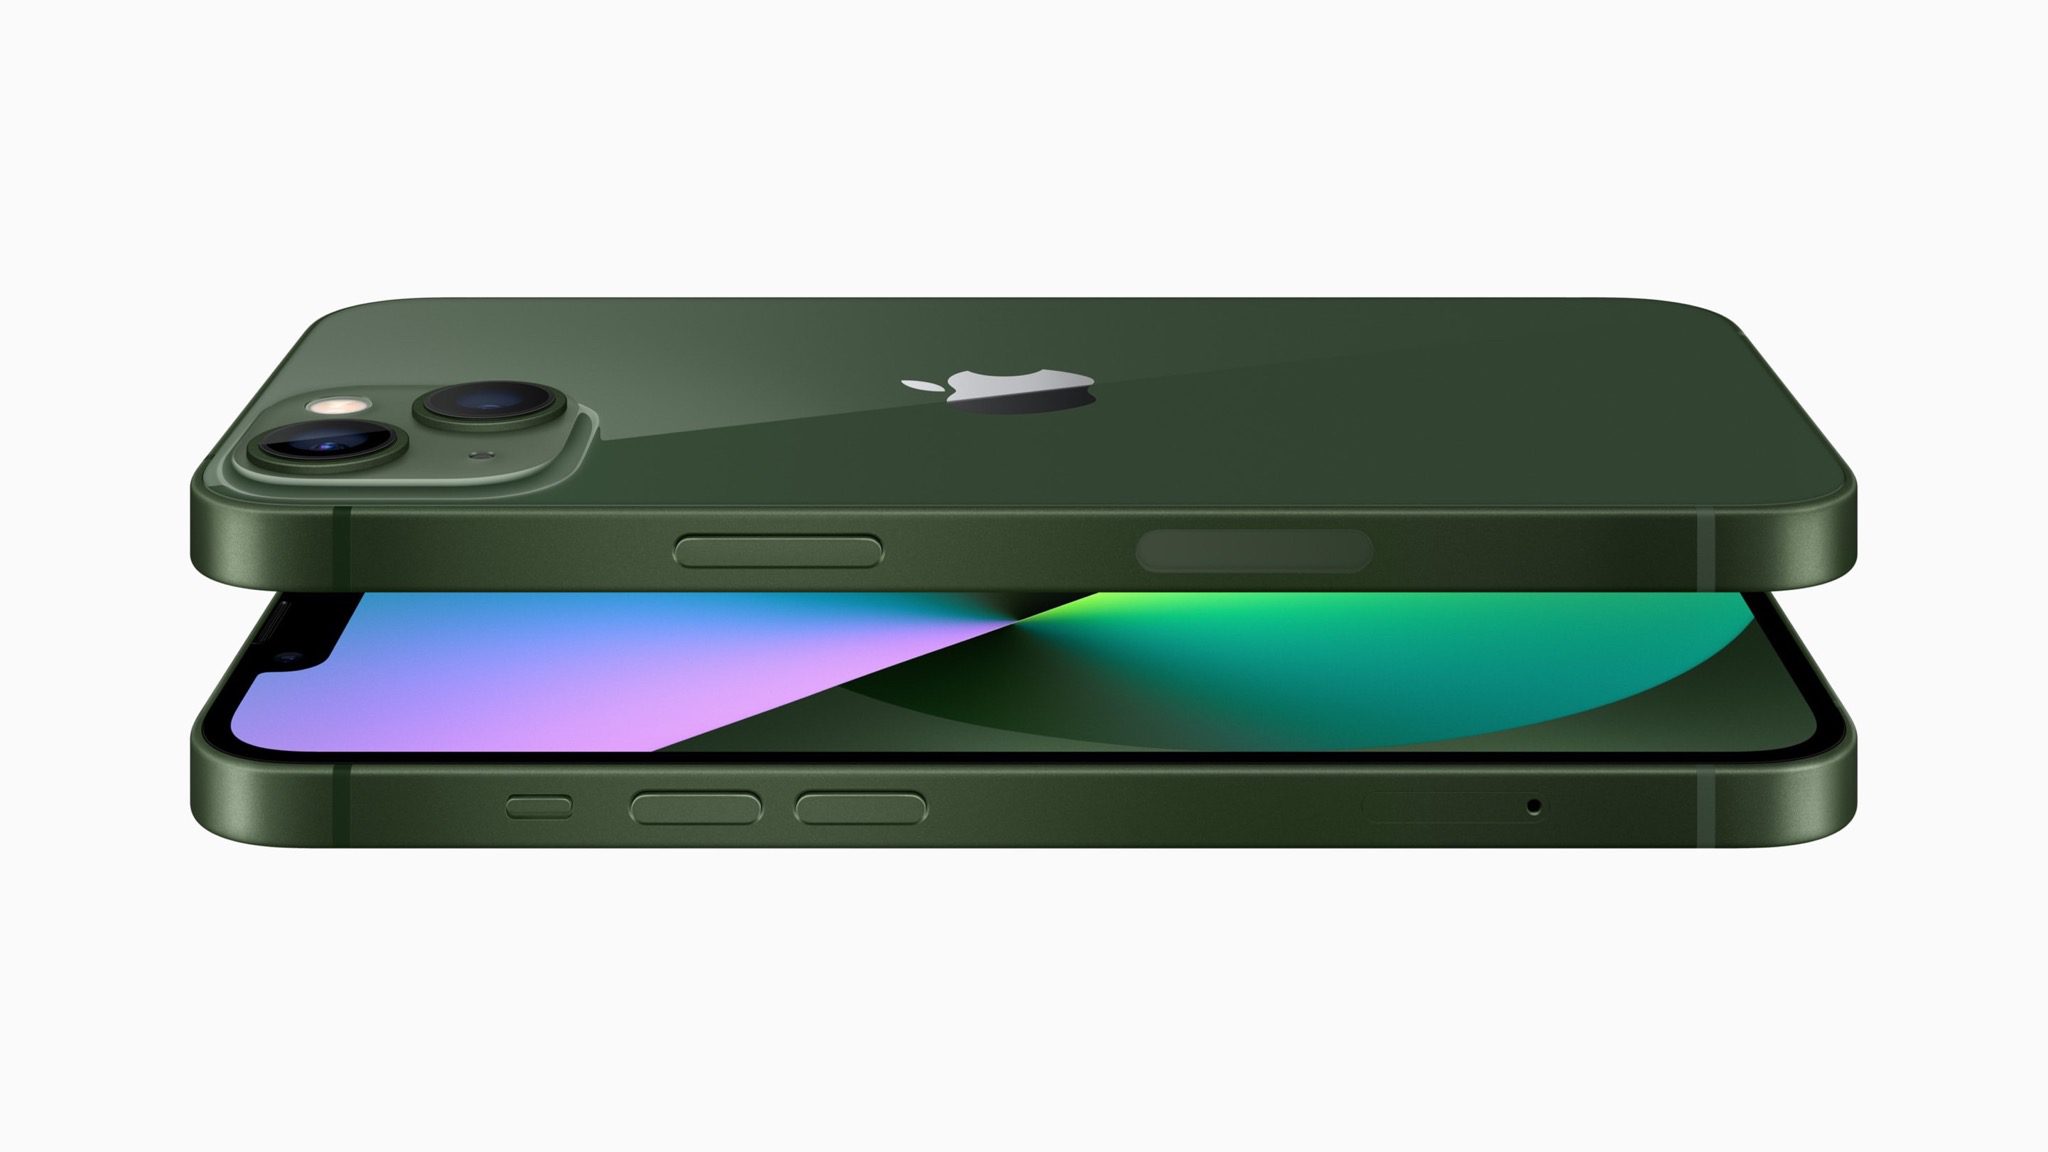 Apple dezvăluie noi culori verzi pentru iPhone 13 și iPhone 13 Pro